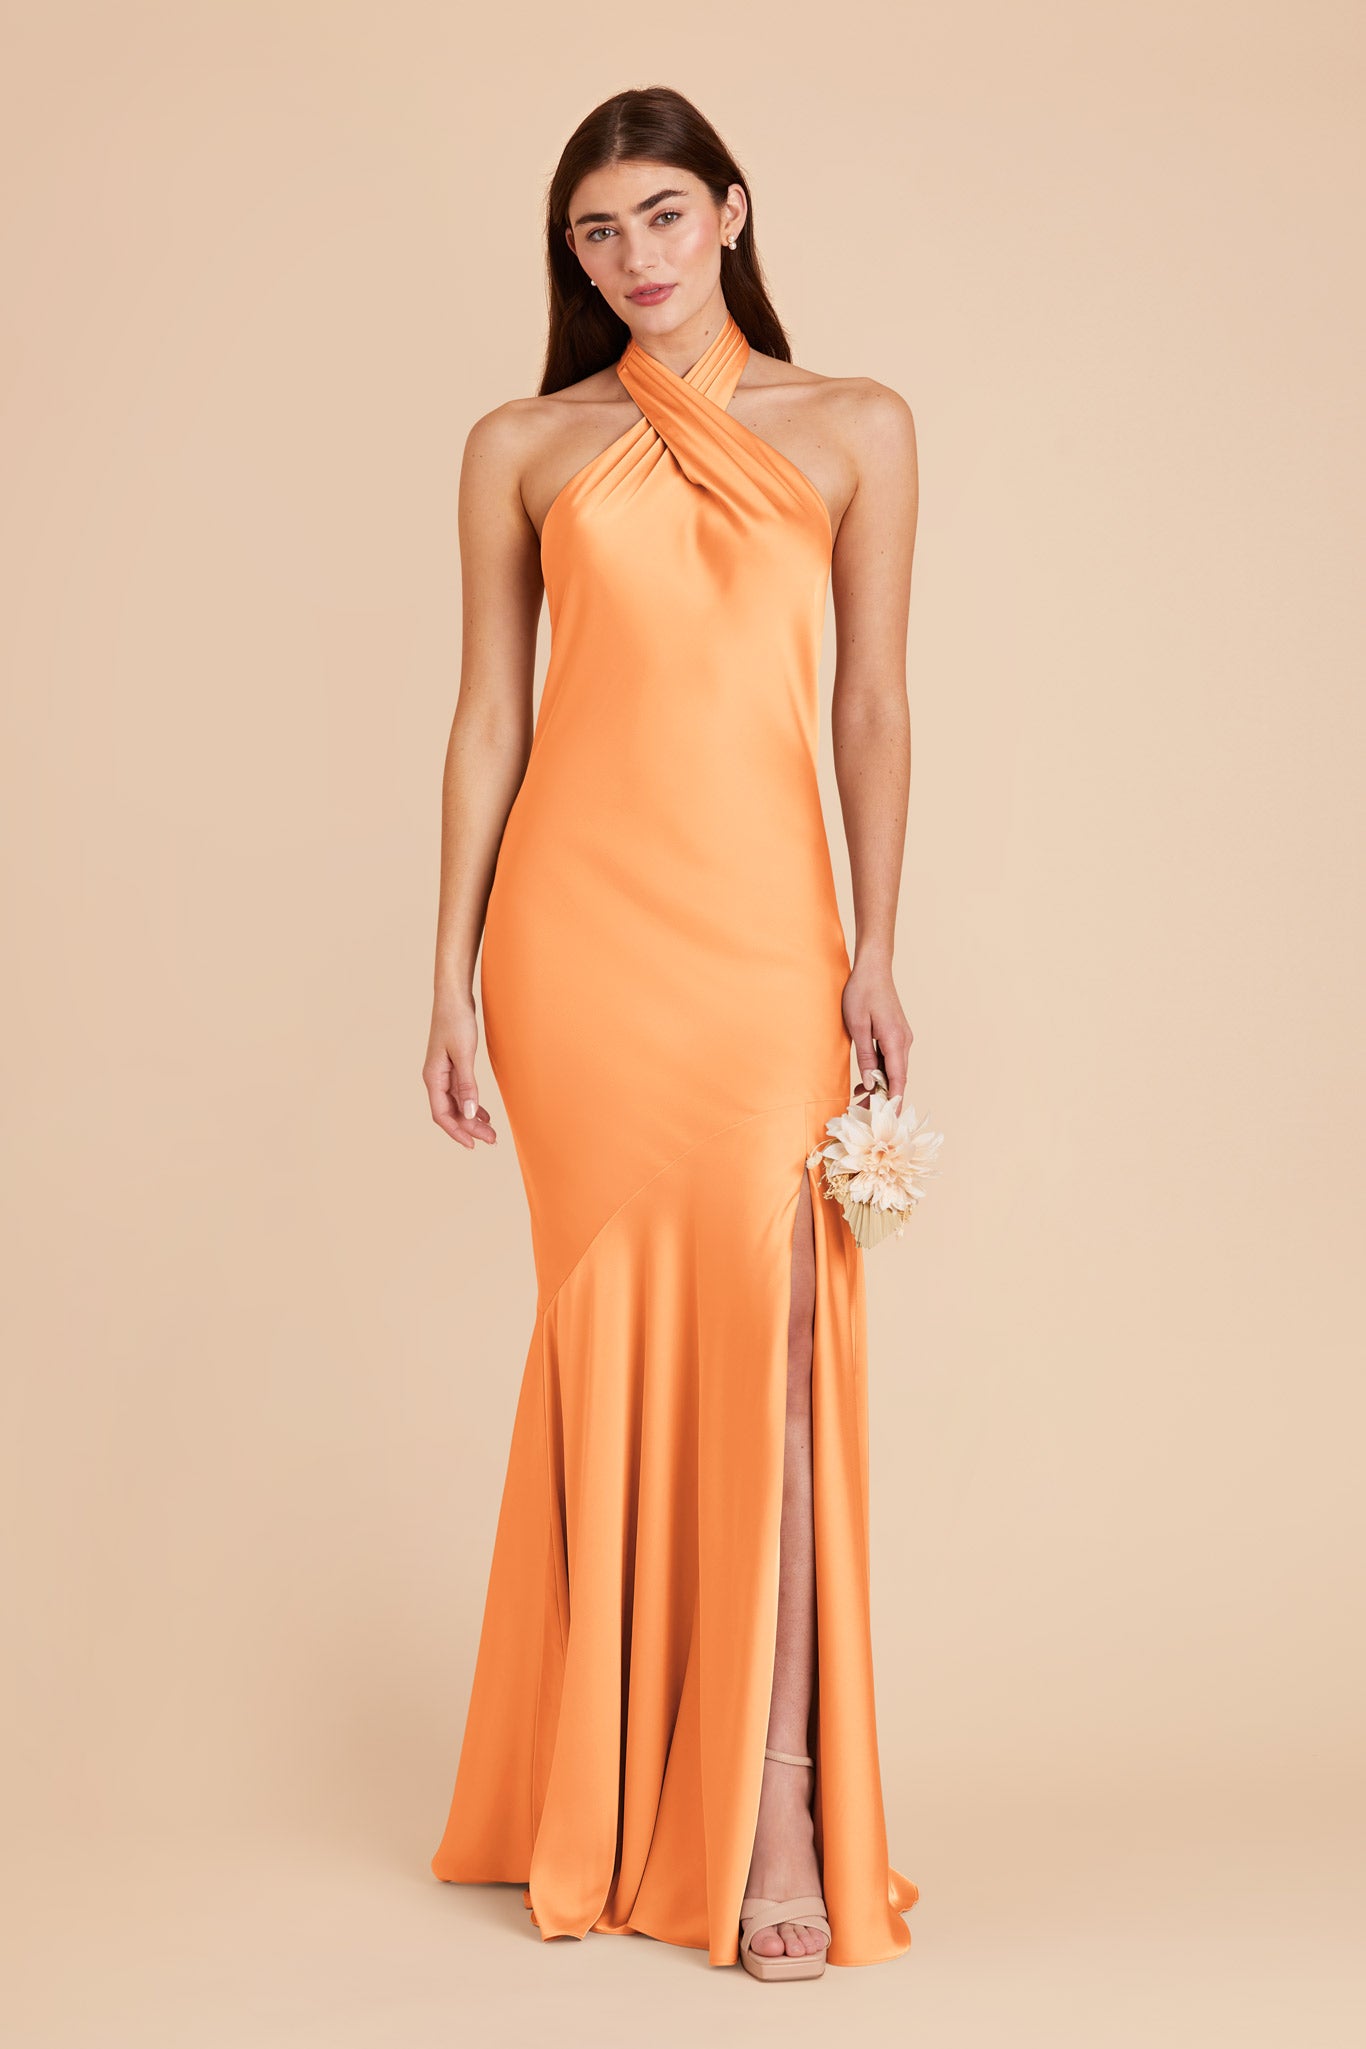 Apricot Stephanie Matte Satin Dress by Birdy Grey